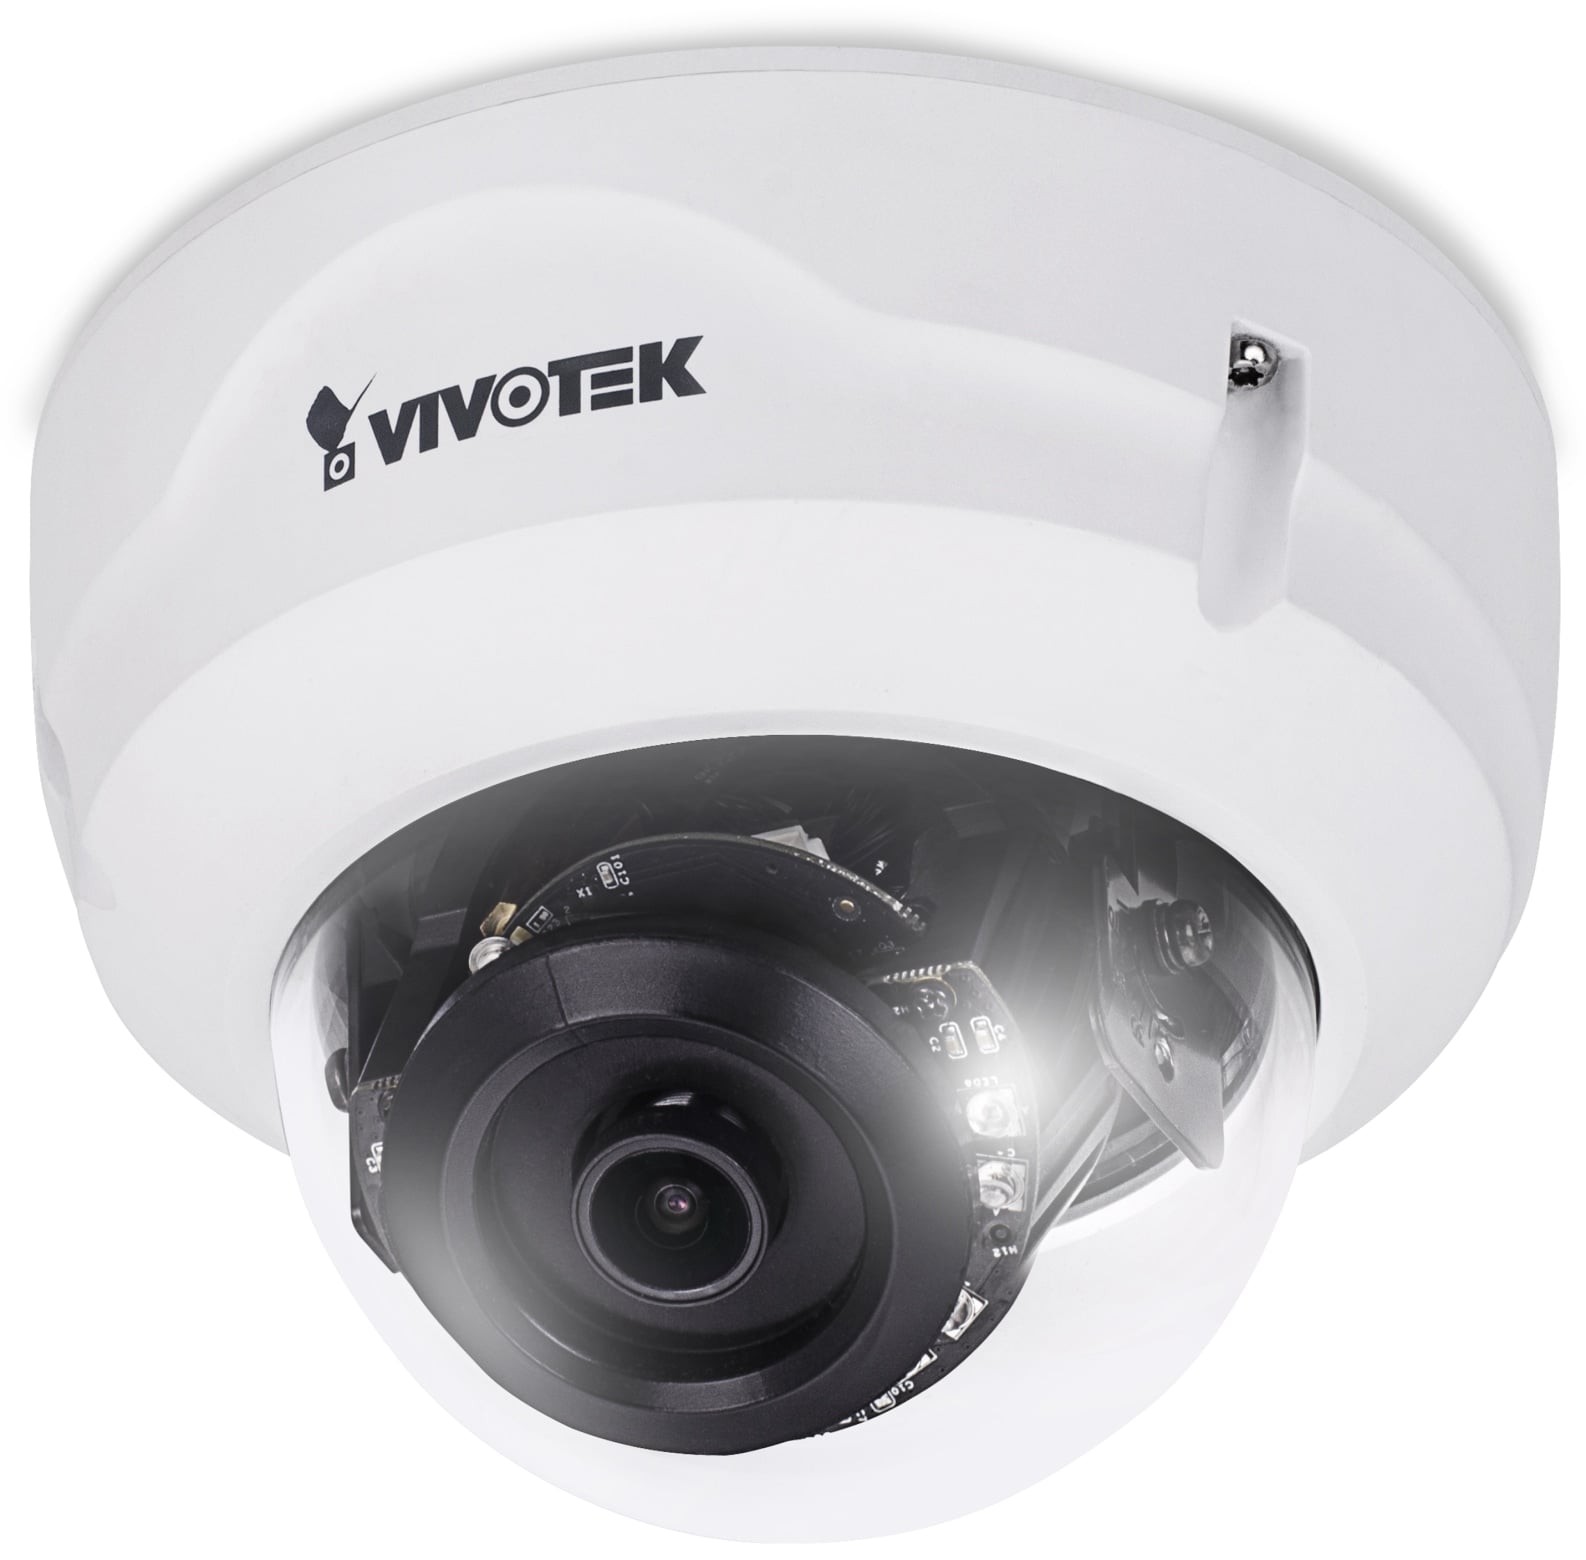 Vivotek überwachungskamera FD8379-HV, IP, POE, Dome, 4MP, außen